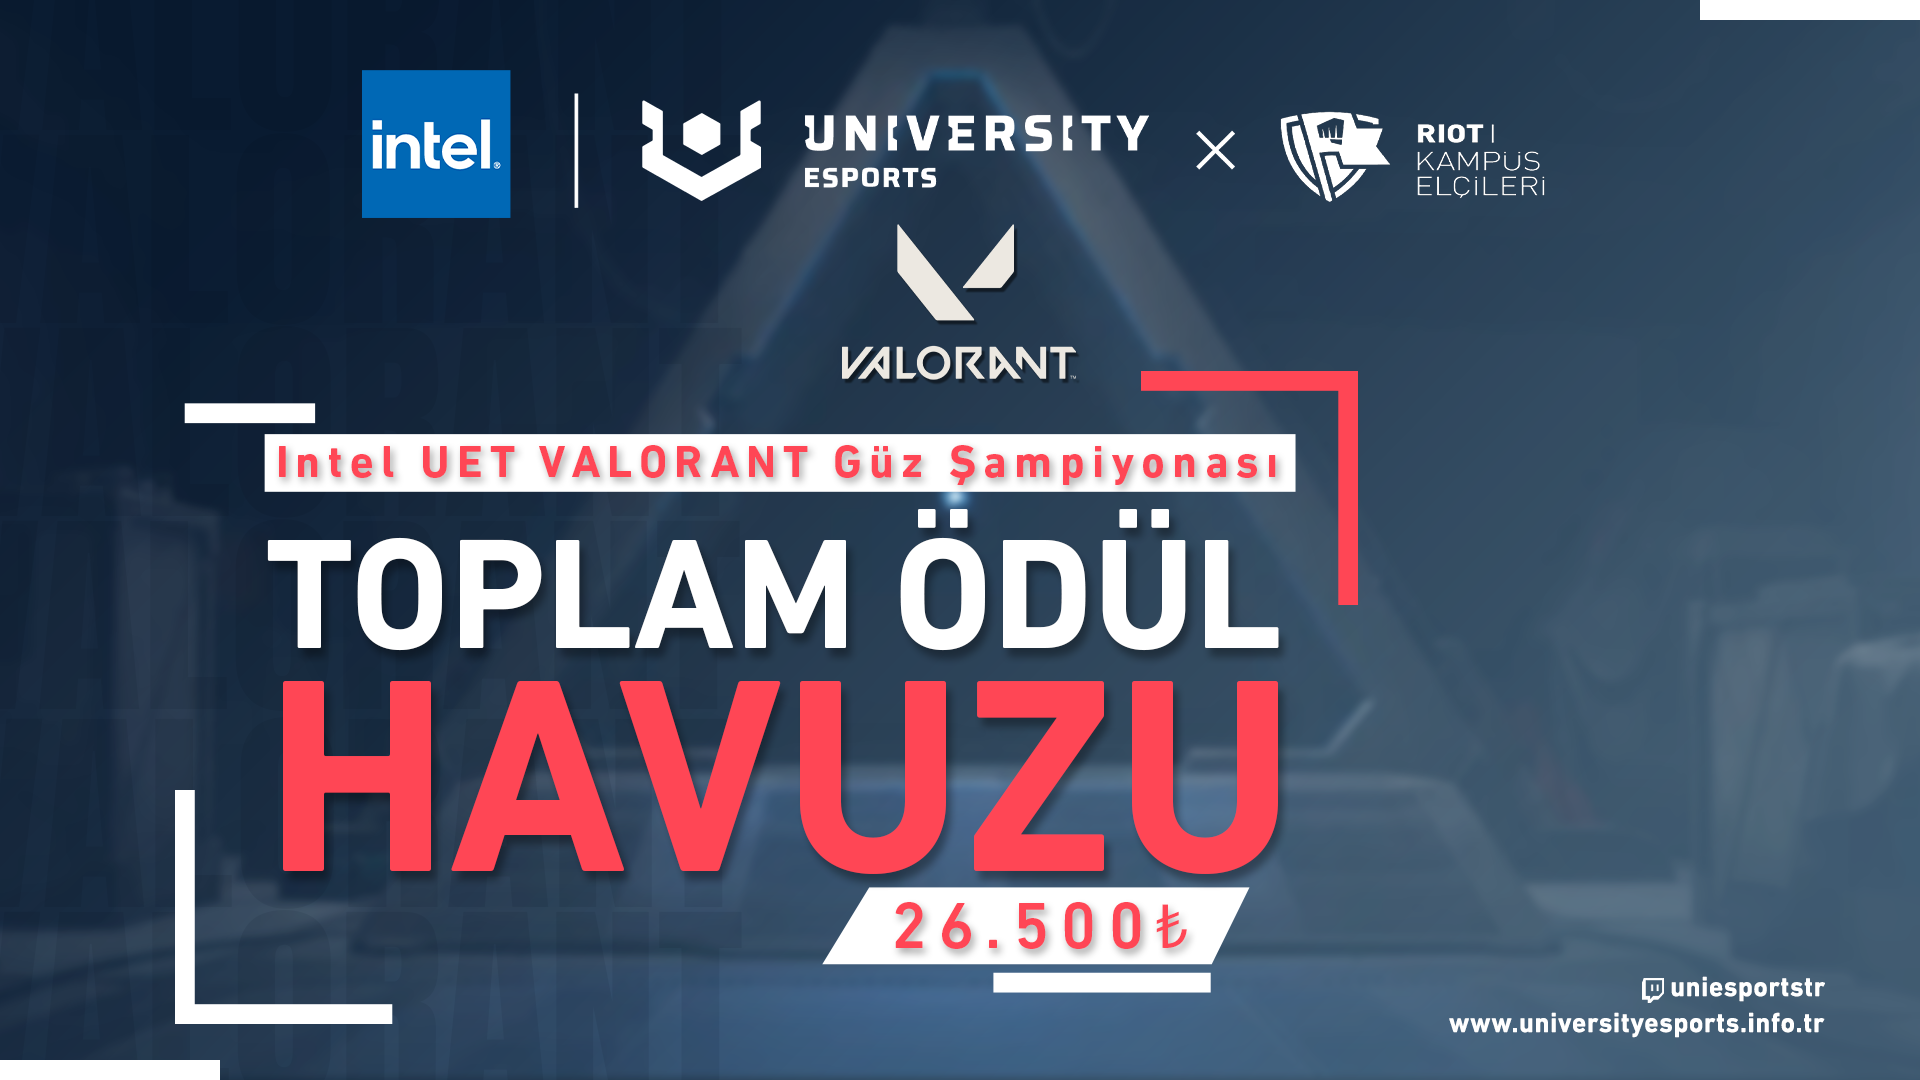 Intel University Esports Türkiye’de Güz Sezonu Riot Kampüs Elçileri Programı (KEP) Ortaklığıyla Devam Ediyor